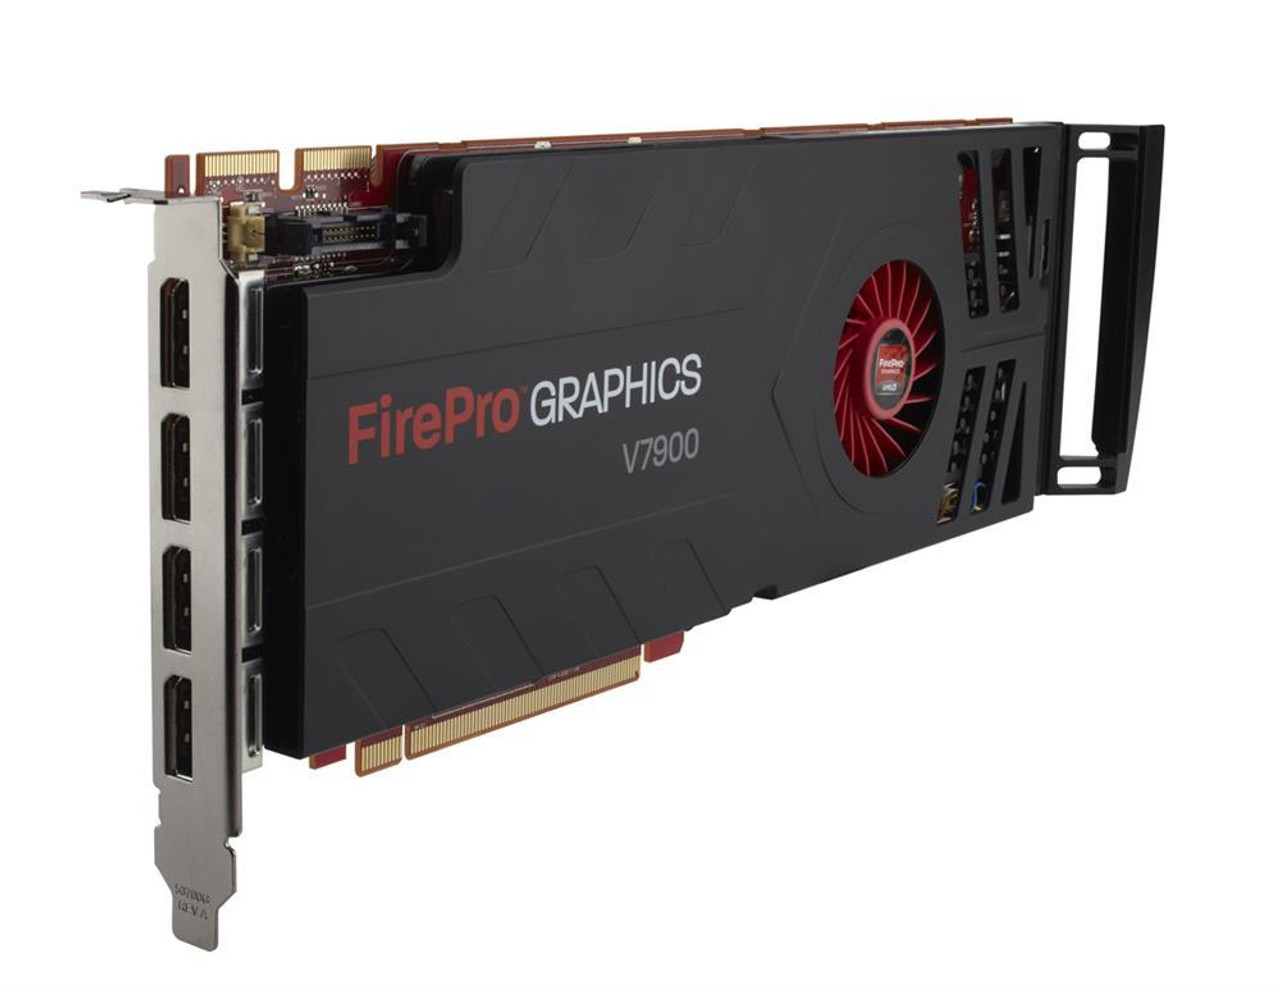 653329-001 - HP FirePro V7900 2GB PCI-Express X16 Dp Video Graphics Card